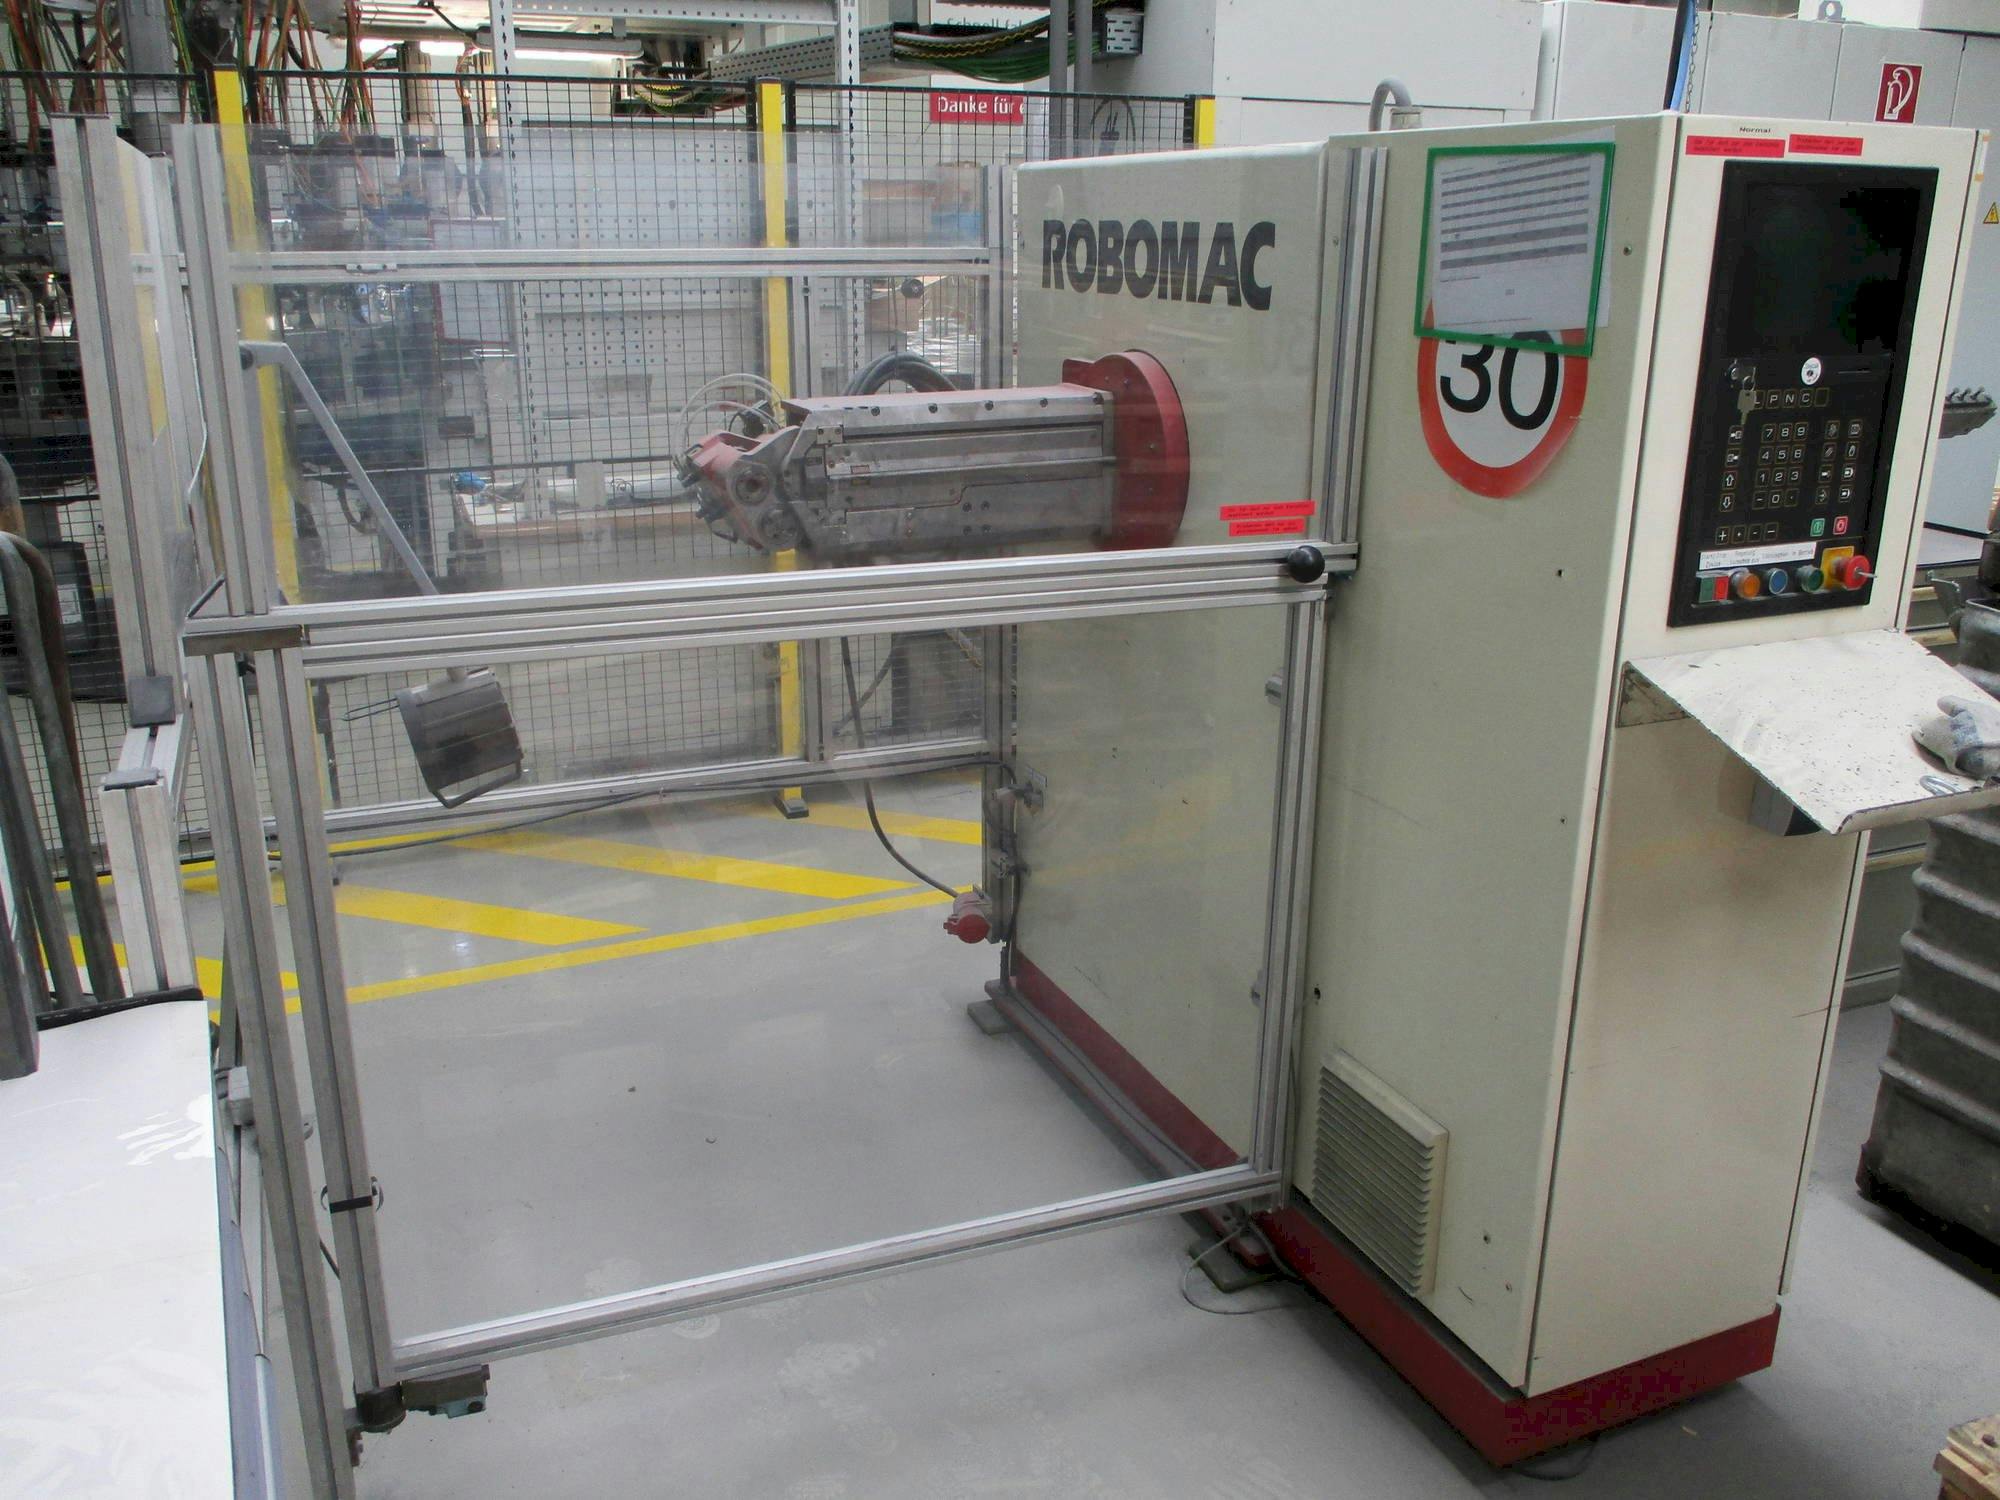 Numalliance/Latour Robomac 206-maskinen framifrån